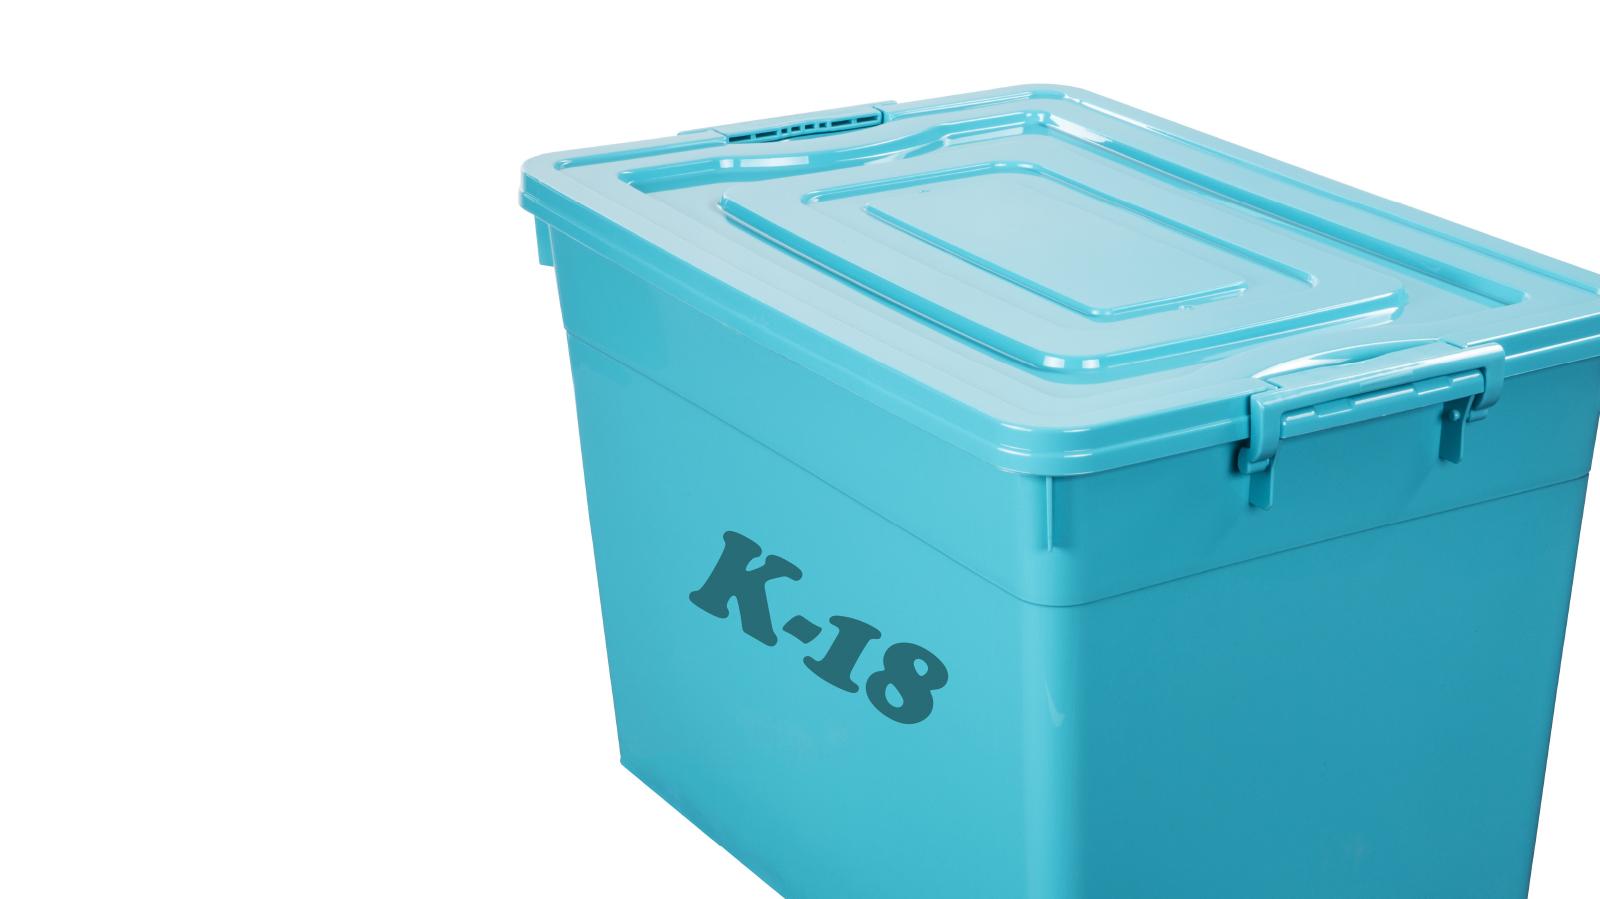 Turkoosi kannellinen muovilaatikko, jossa teksti K-18.